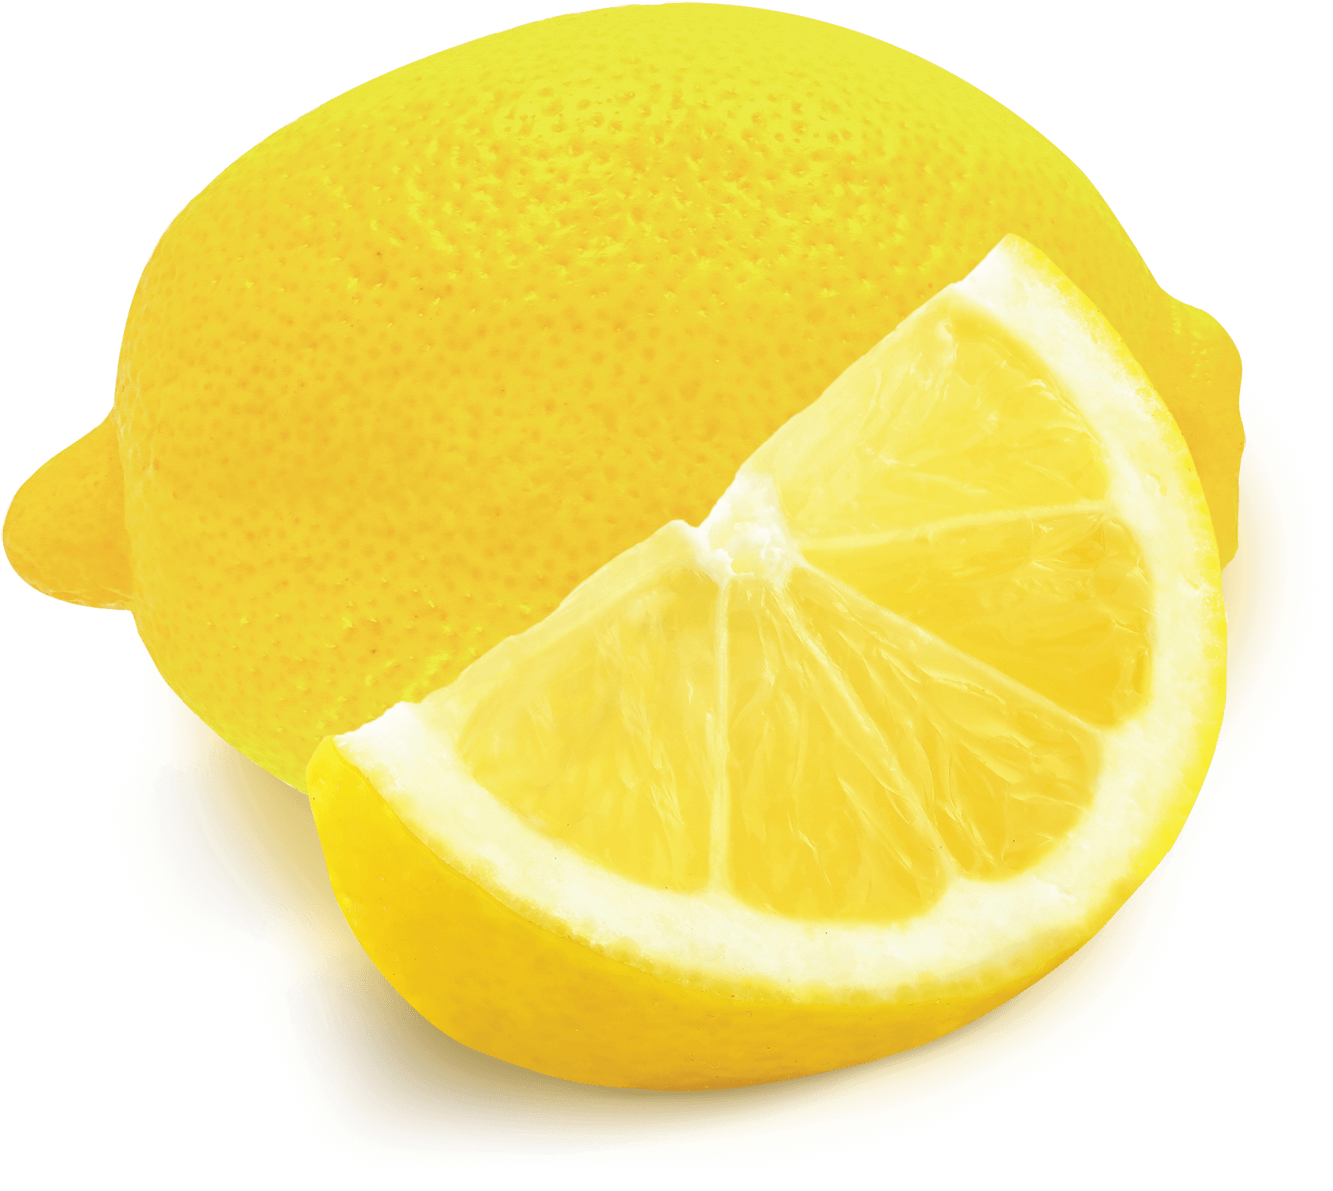 Lemon - Tobacco (1500x1500)